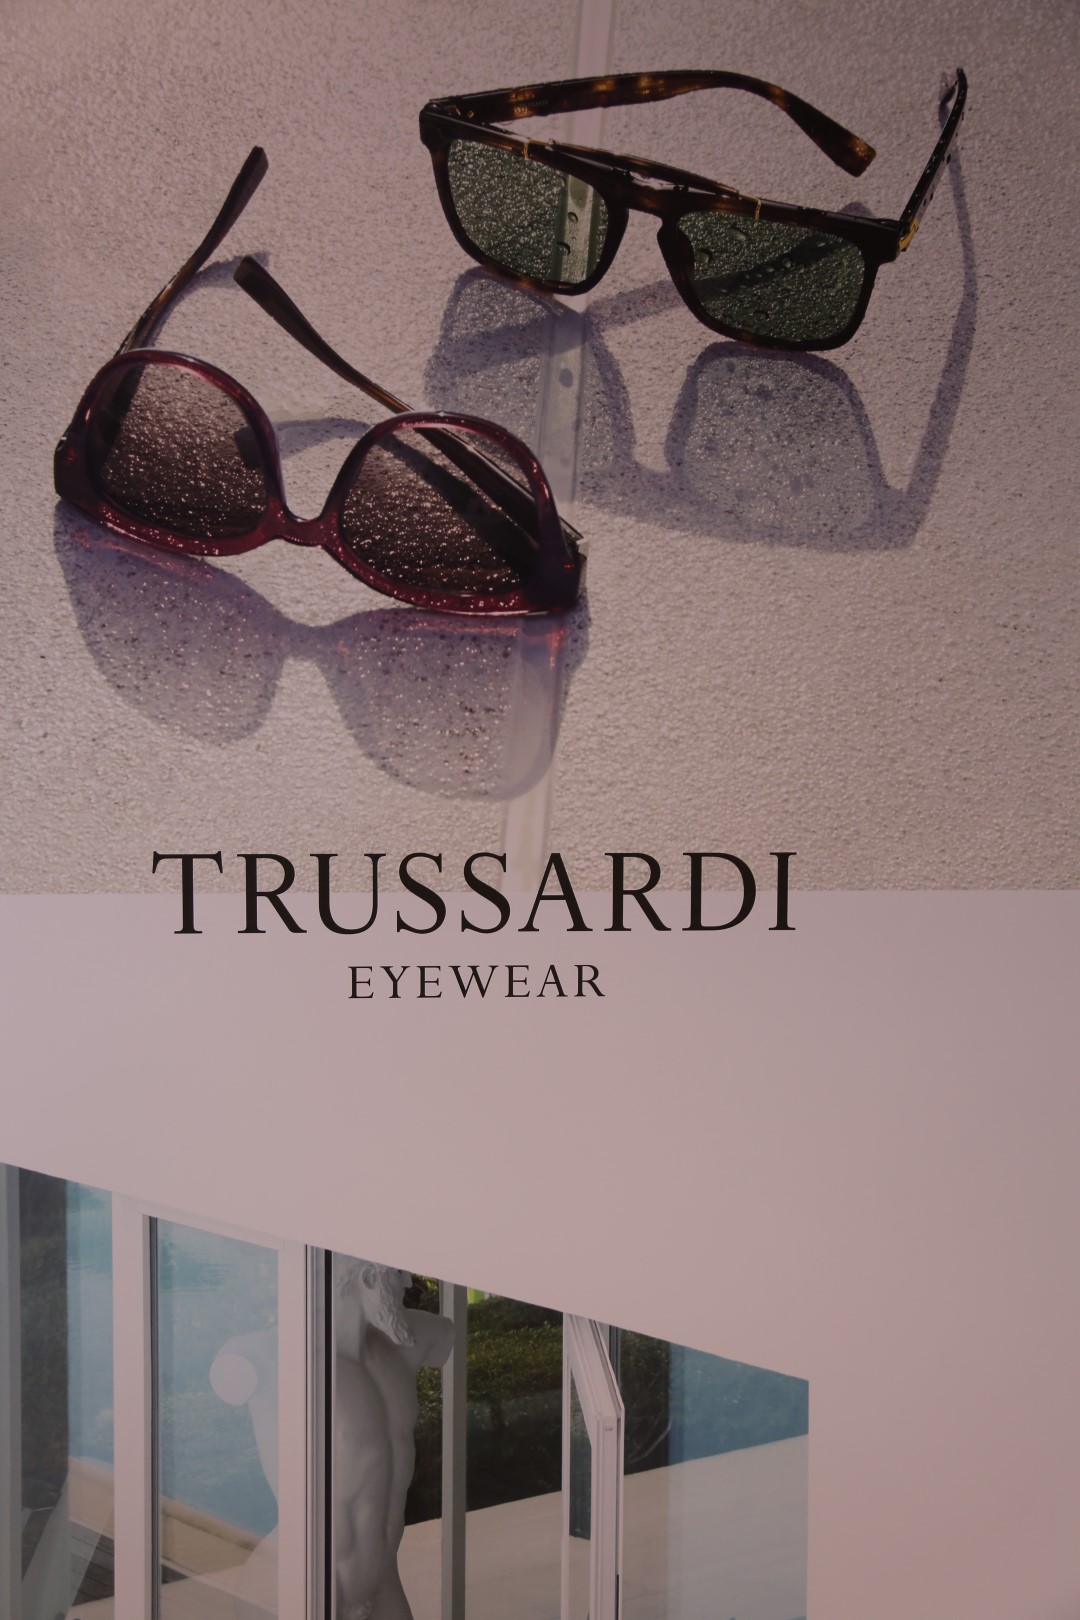 Trussardi occhiali da sole 2016: il party a Milano con David Trezeguet e Levante, le foto